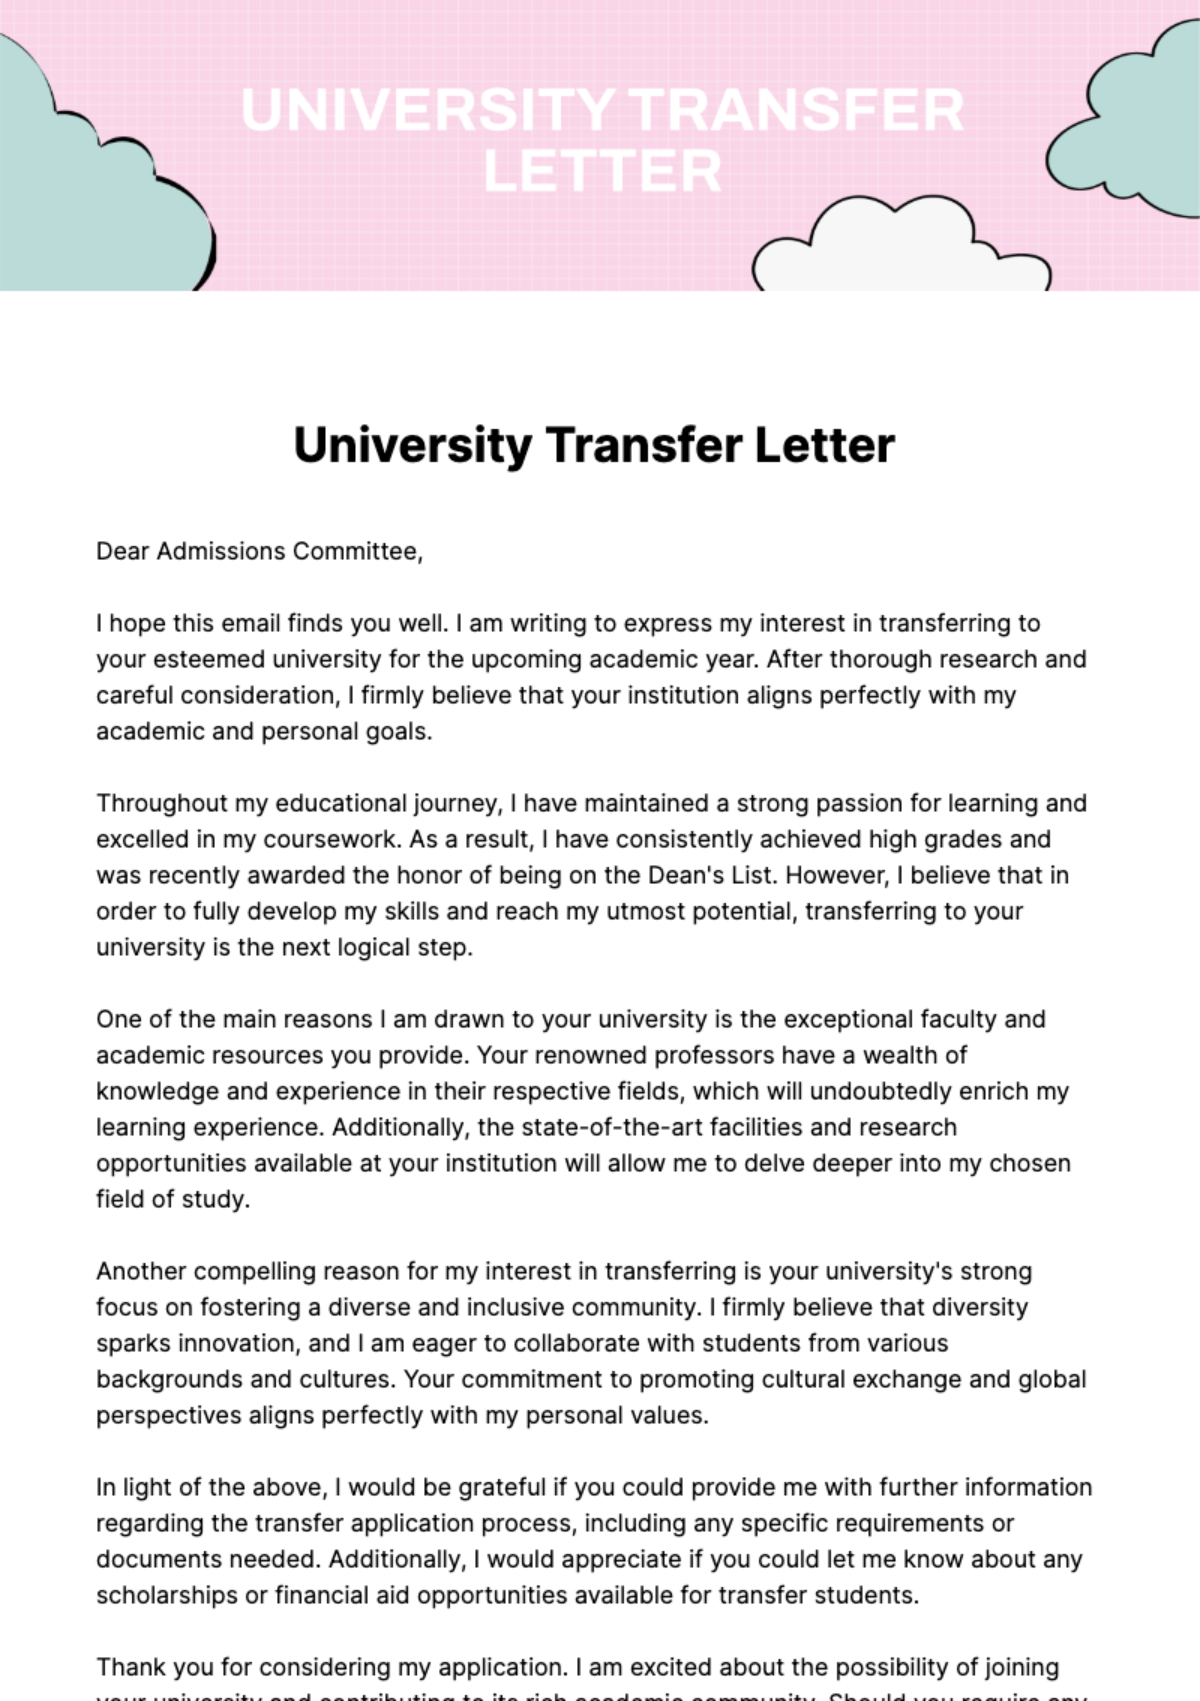 University Transfer Letter Template